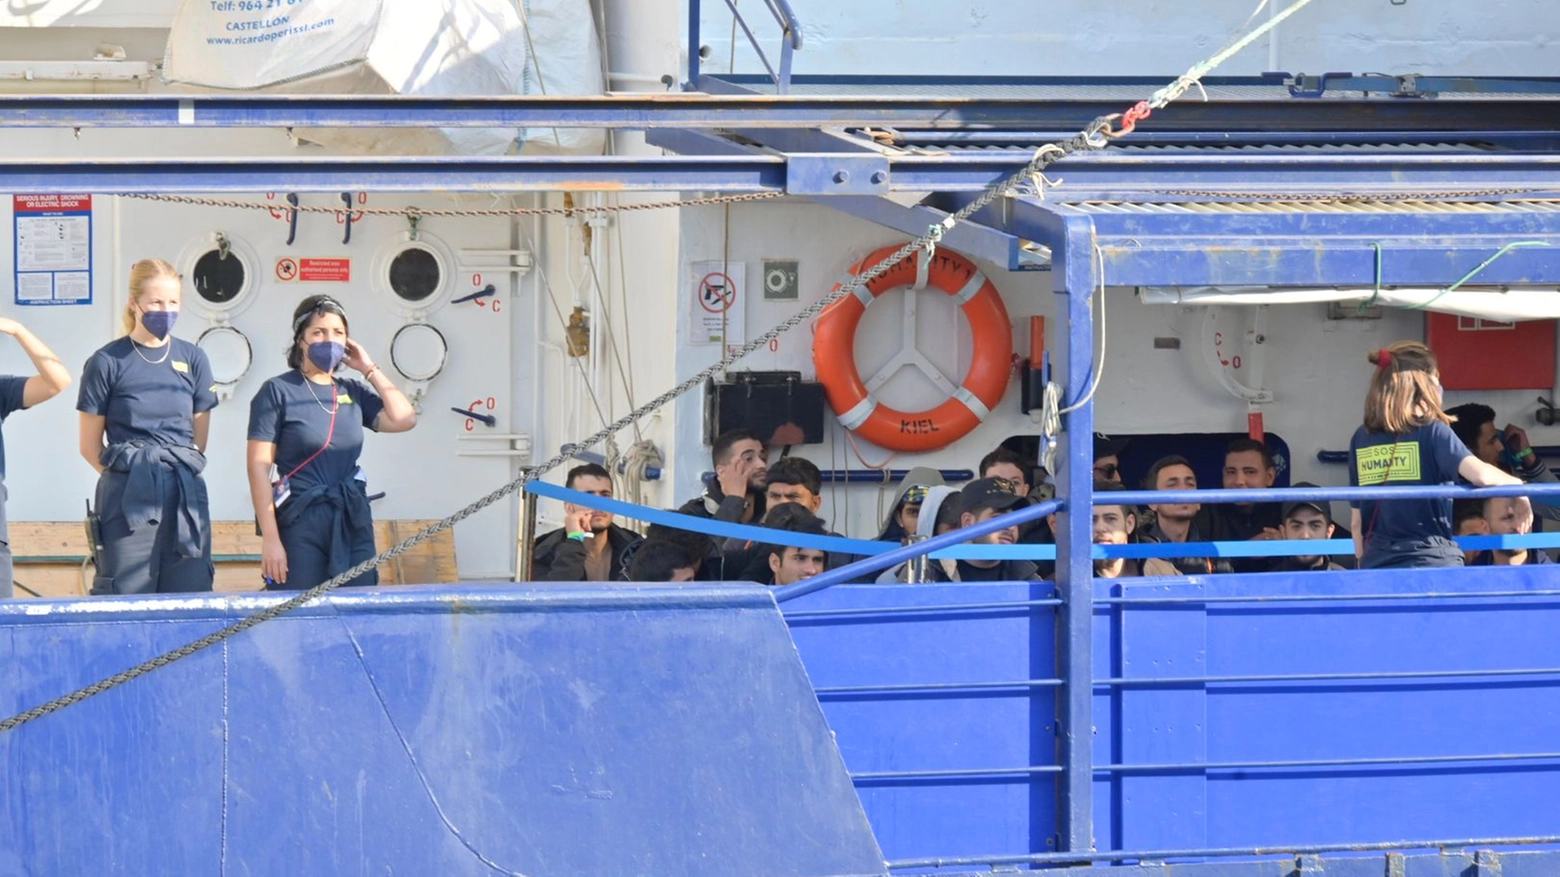 <p>Migranti, la “Sos Humanity” in porto a Livorno: sulla nave anche 9 ragazzi / <a href="https://www.iltelegrafolivorno.it/cronaca/migranti-nave-humanity-livorno-71d8862e"><strong>Foto</strong></a> / <a href="https://www.iltelegrafolivorno.it/cronaca/larrivo-della-nave-ong-a-livorno-egeihv0a"><strong>L'arrivo della nave (video)</strong></a> / <a href="https://www.iltelegrafolivorno.it/cronaca/i-migranti-ringraziano-video-di-francesco-ingardia-q0umf4h3"><strong>I migranti sbarcano e pregano (video)</strong></a> / <a href="https://www.iltelegrafolivorno.it/cronaca/nave-dei-migranti-a-livorno-parla-il-sindaco-salvetti-video-di-francesco-ingardia-fn0x5ahm"><strong>Il sindaco Salvetti (video)</strong></a> / <a href="https://www.iltelegrafolivorno.it/cronaca/lassessore-raspanti-video-di-francesco-ingardia-i234g9mu"><strong>L'assessore Raspanti (video)</strong></a> /</p>